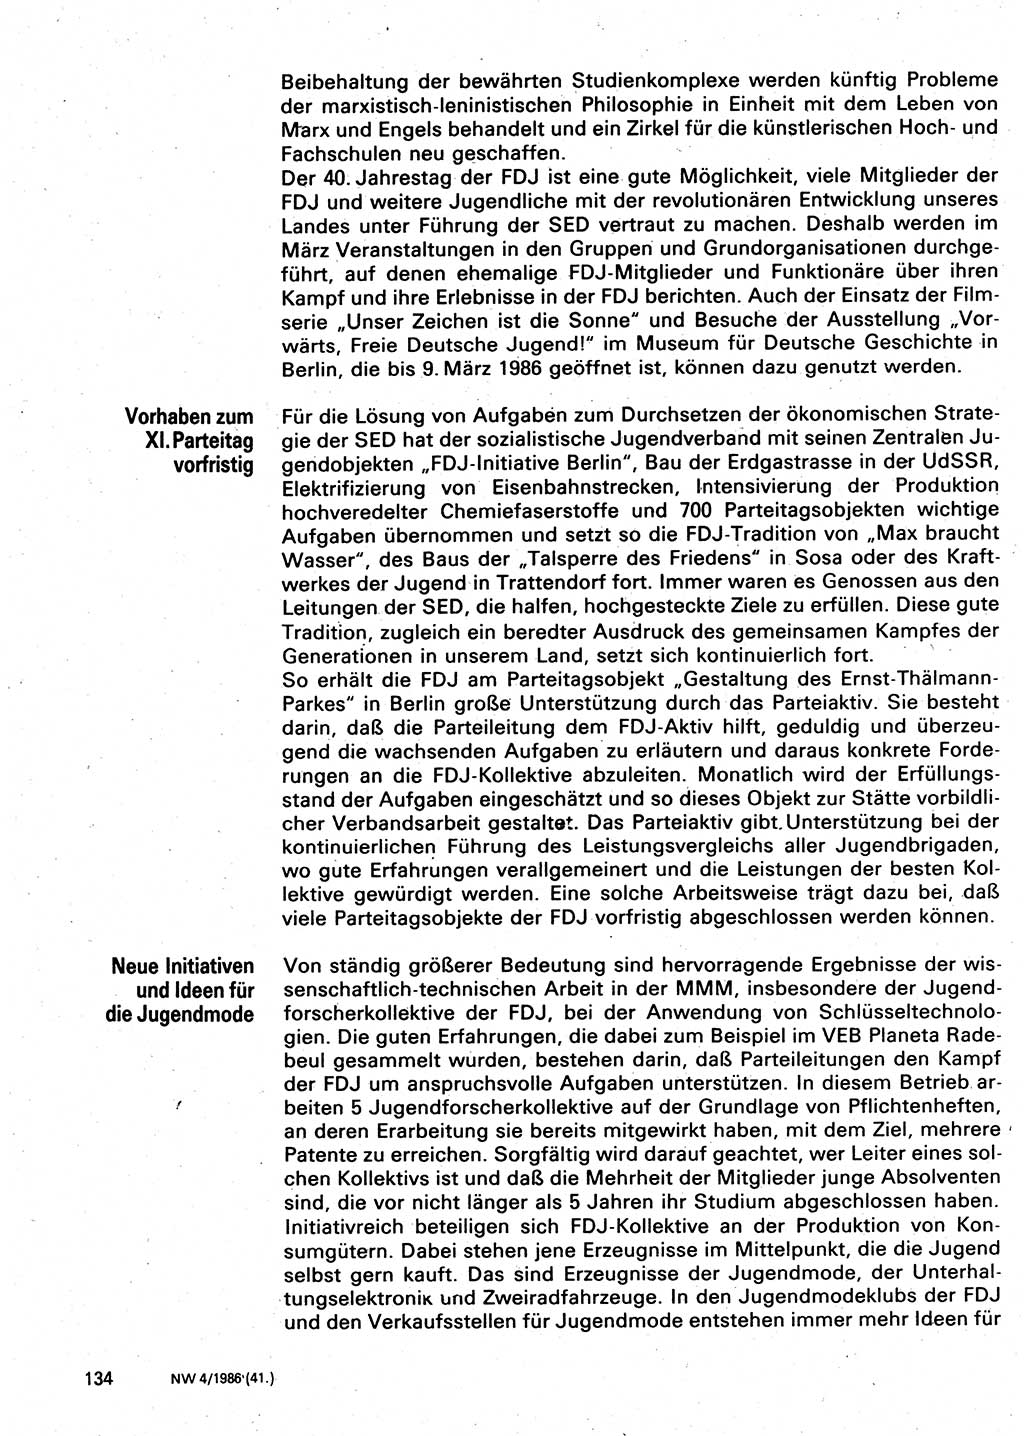 Neuer Weg (NW), Organ des Zentralkomitees (ZK) der SED (Sozialistische Einheitspartei Deutschlands) für Fragen des Parteilebens, 41. Jahrgang [Deutsche Demokratische Republik (DDR)] 1986, Seite 134 (NW ZK SED DDR 1986, S. 134)